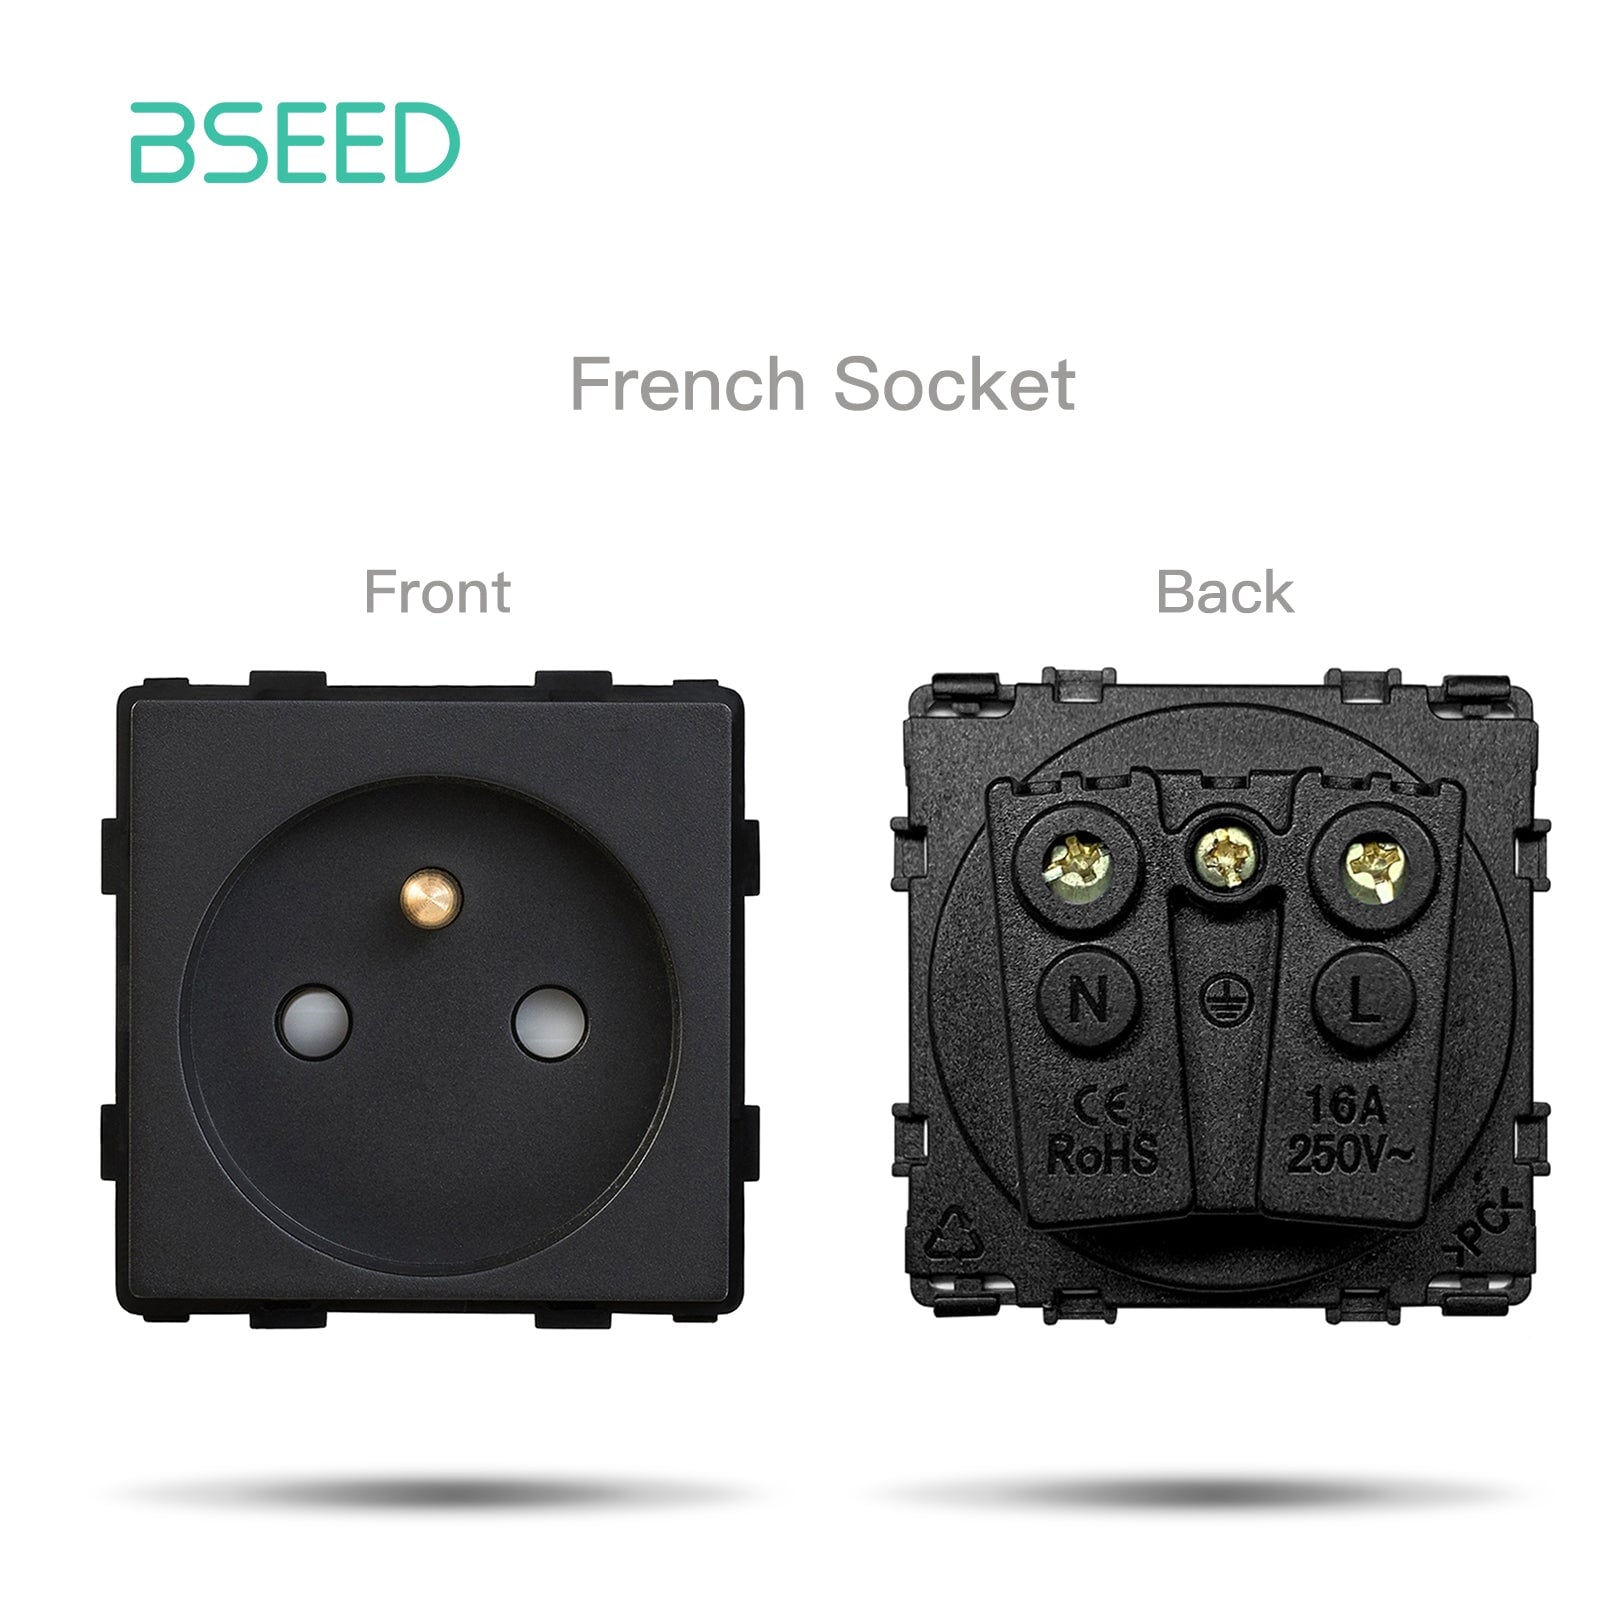 BSEED EU/FR/ UK/MF Standard Wall Socket Function Key Touch WiFi Zigbee type Power Outlets & Sockets Bseedswitch Black FR Touch